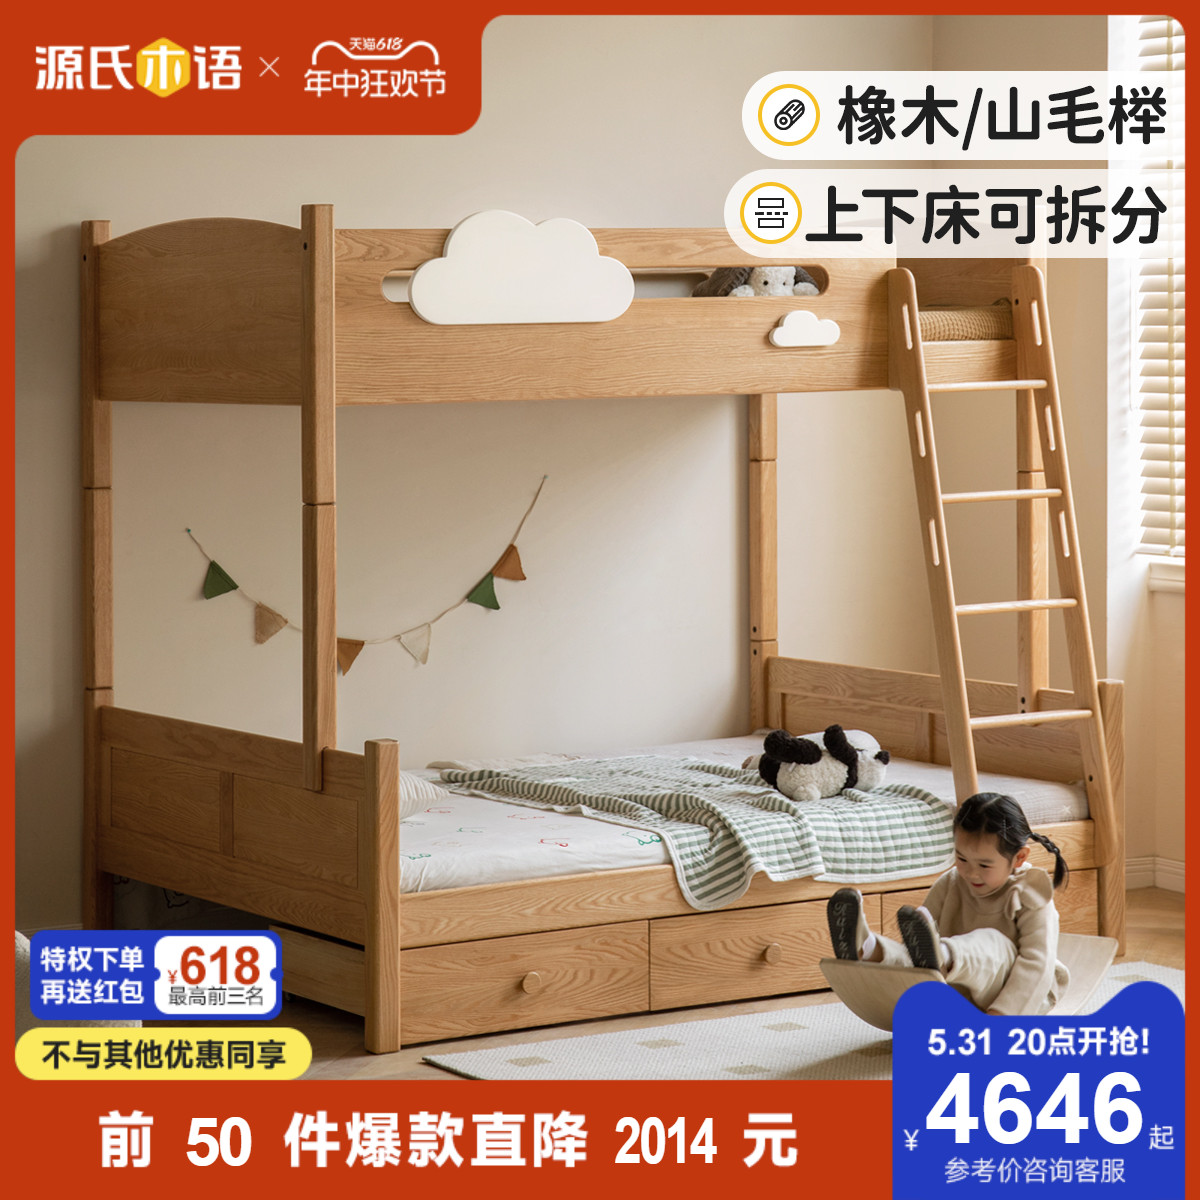 源氏木语实木床简约多功能可拆分高低床省空间家用上下双层儿童床